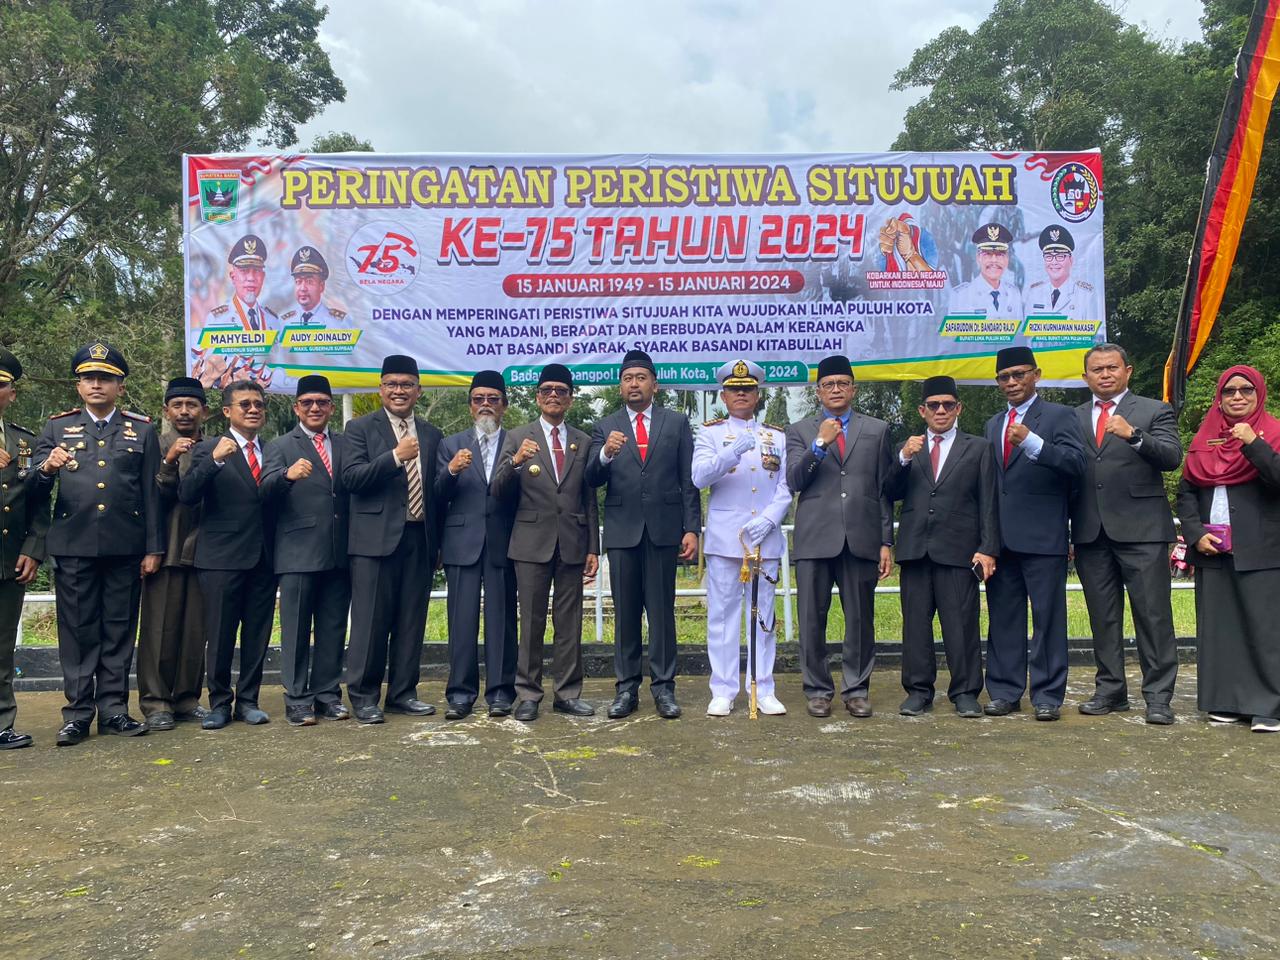 Wakil Gubernur Provinsi Sumatera Barat Audy Joinaldy  foto bersaam selepas upacara Peringatan Peristiwa Situjuah  ke-75 di lapangan Khatib Sulaiman Situjuah Batua, Kecamatan Situjuah Limo Nagari, Senin (15/01/2024).